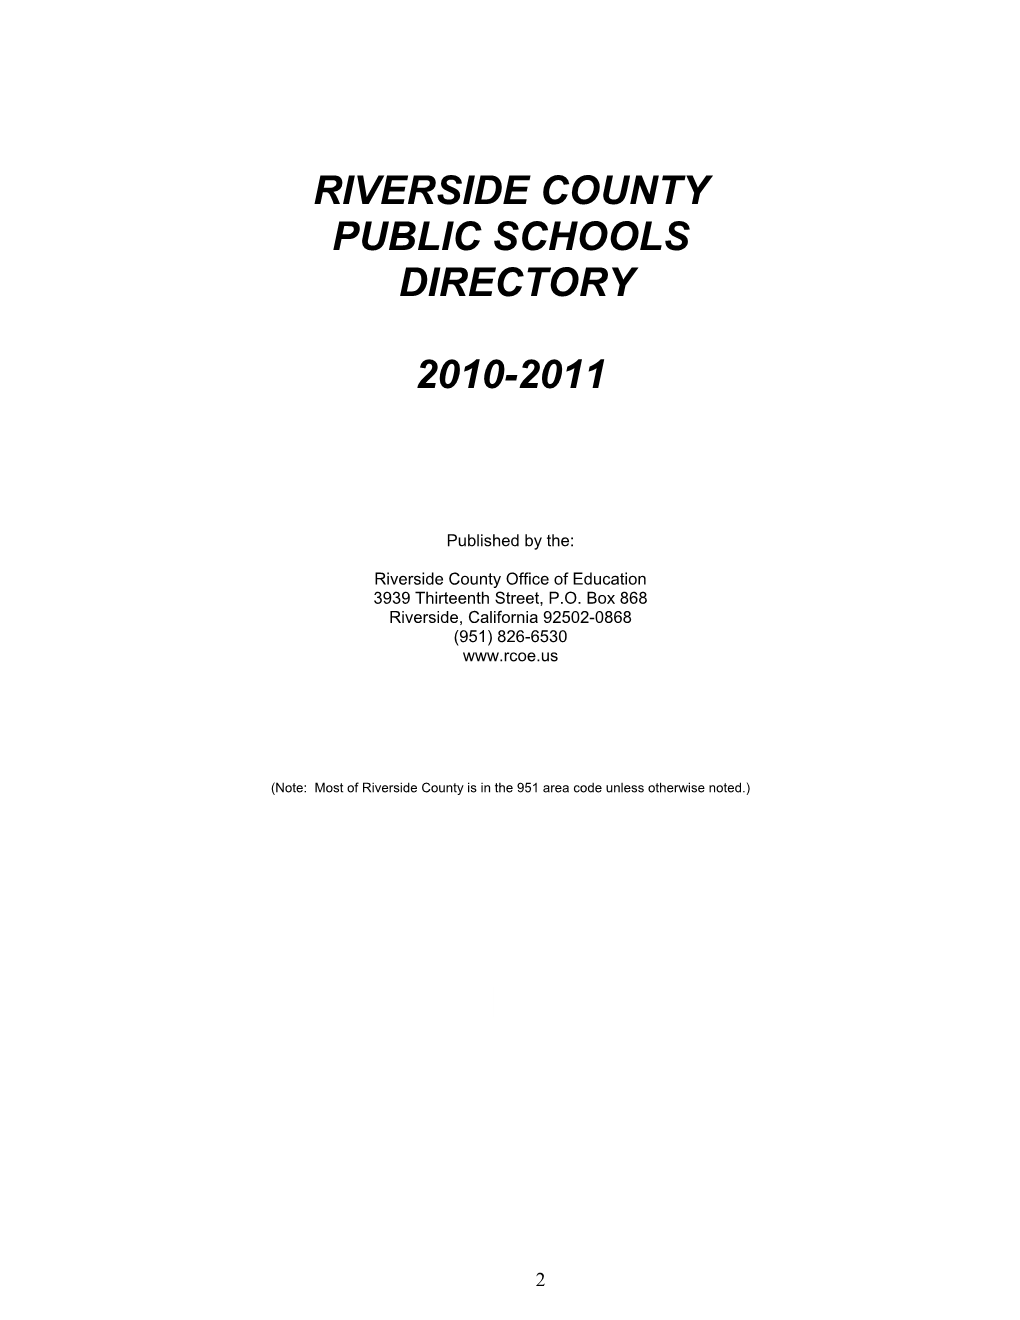 Riverside County Public Schools Directory